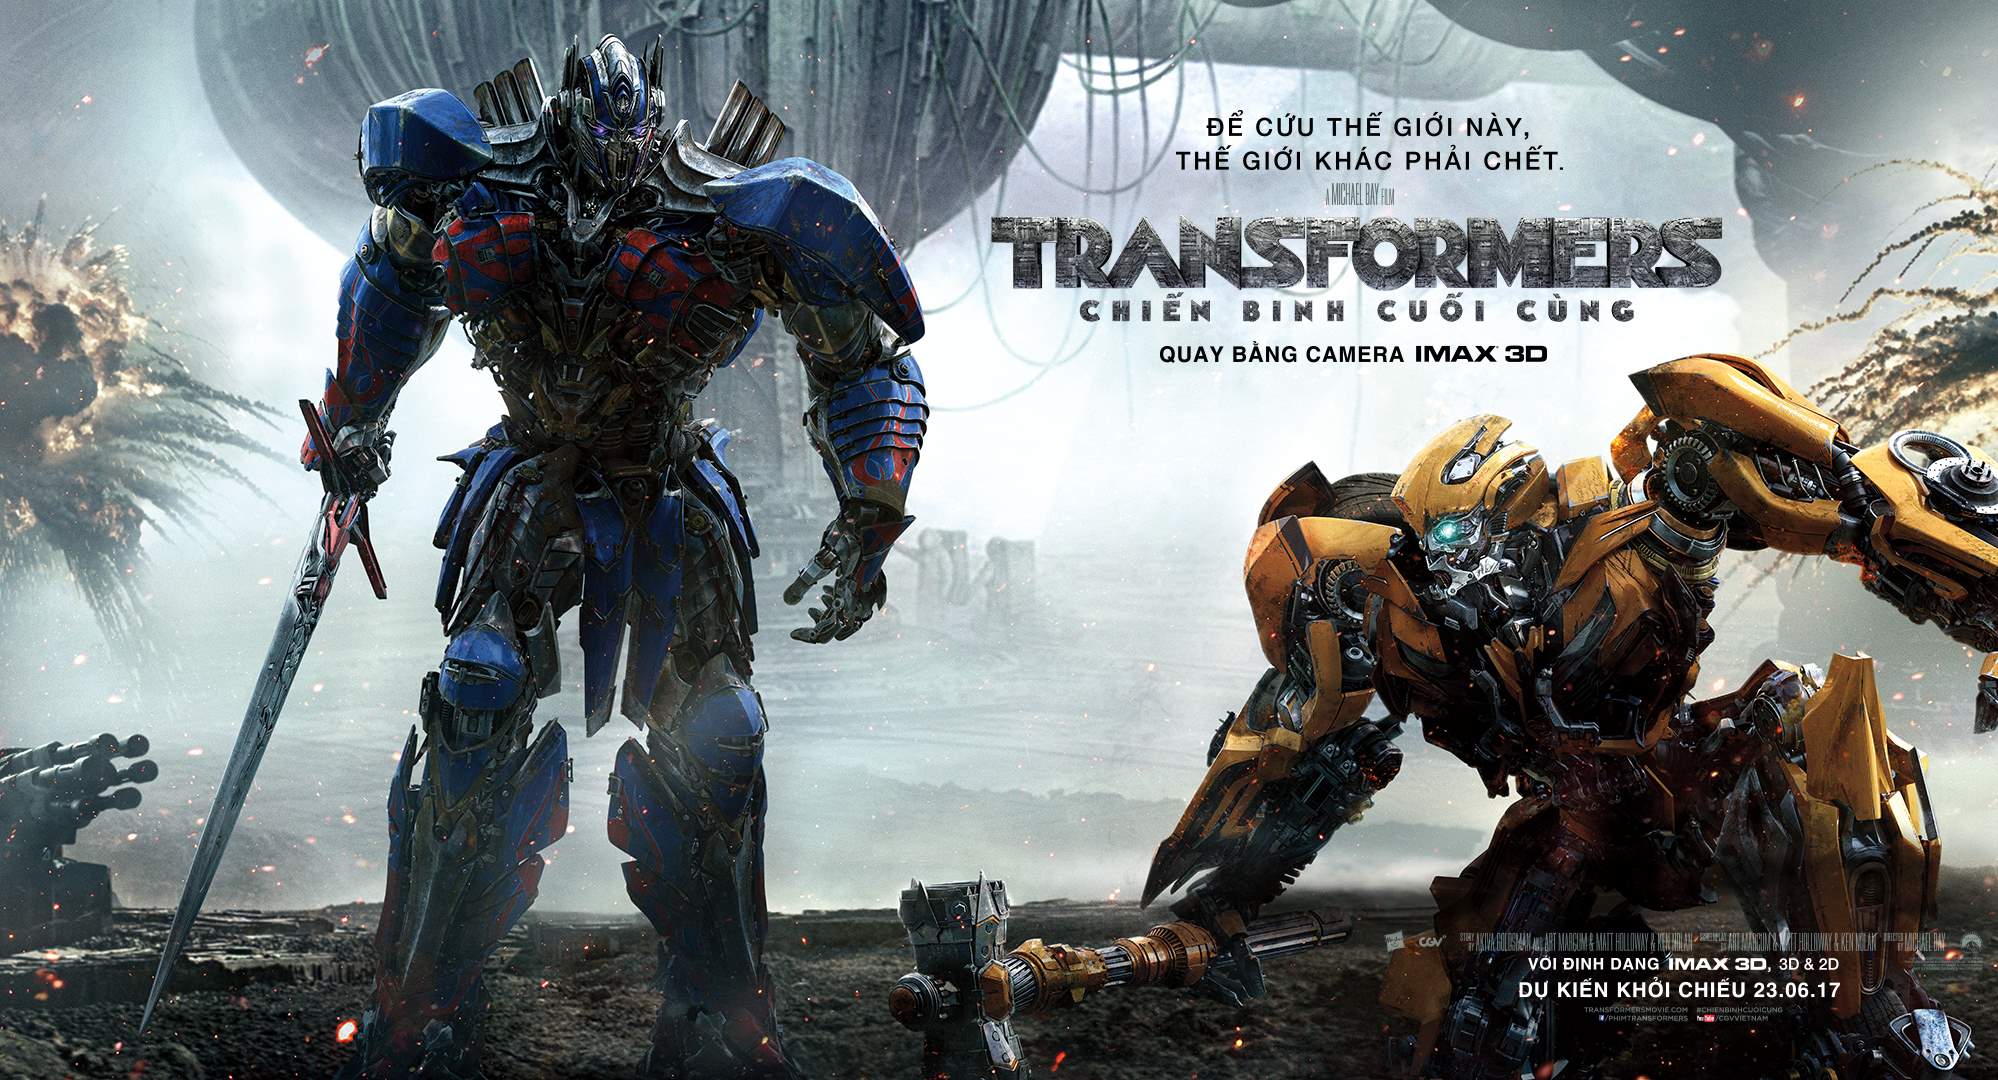 Bạn là fan hâm mộ Transformers? Không nên bỏ lỡ cơ hội xem trước bộ phim mới nhất và đặt vé dự công chiếu Transformers để được trải nghiệm trọn vẹn những pha hành động và màn đấu tranh tuyệt vời.